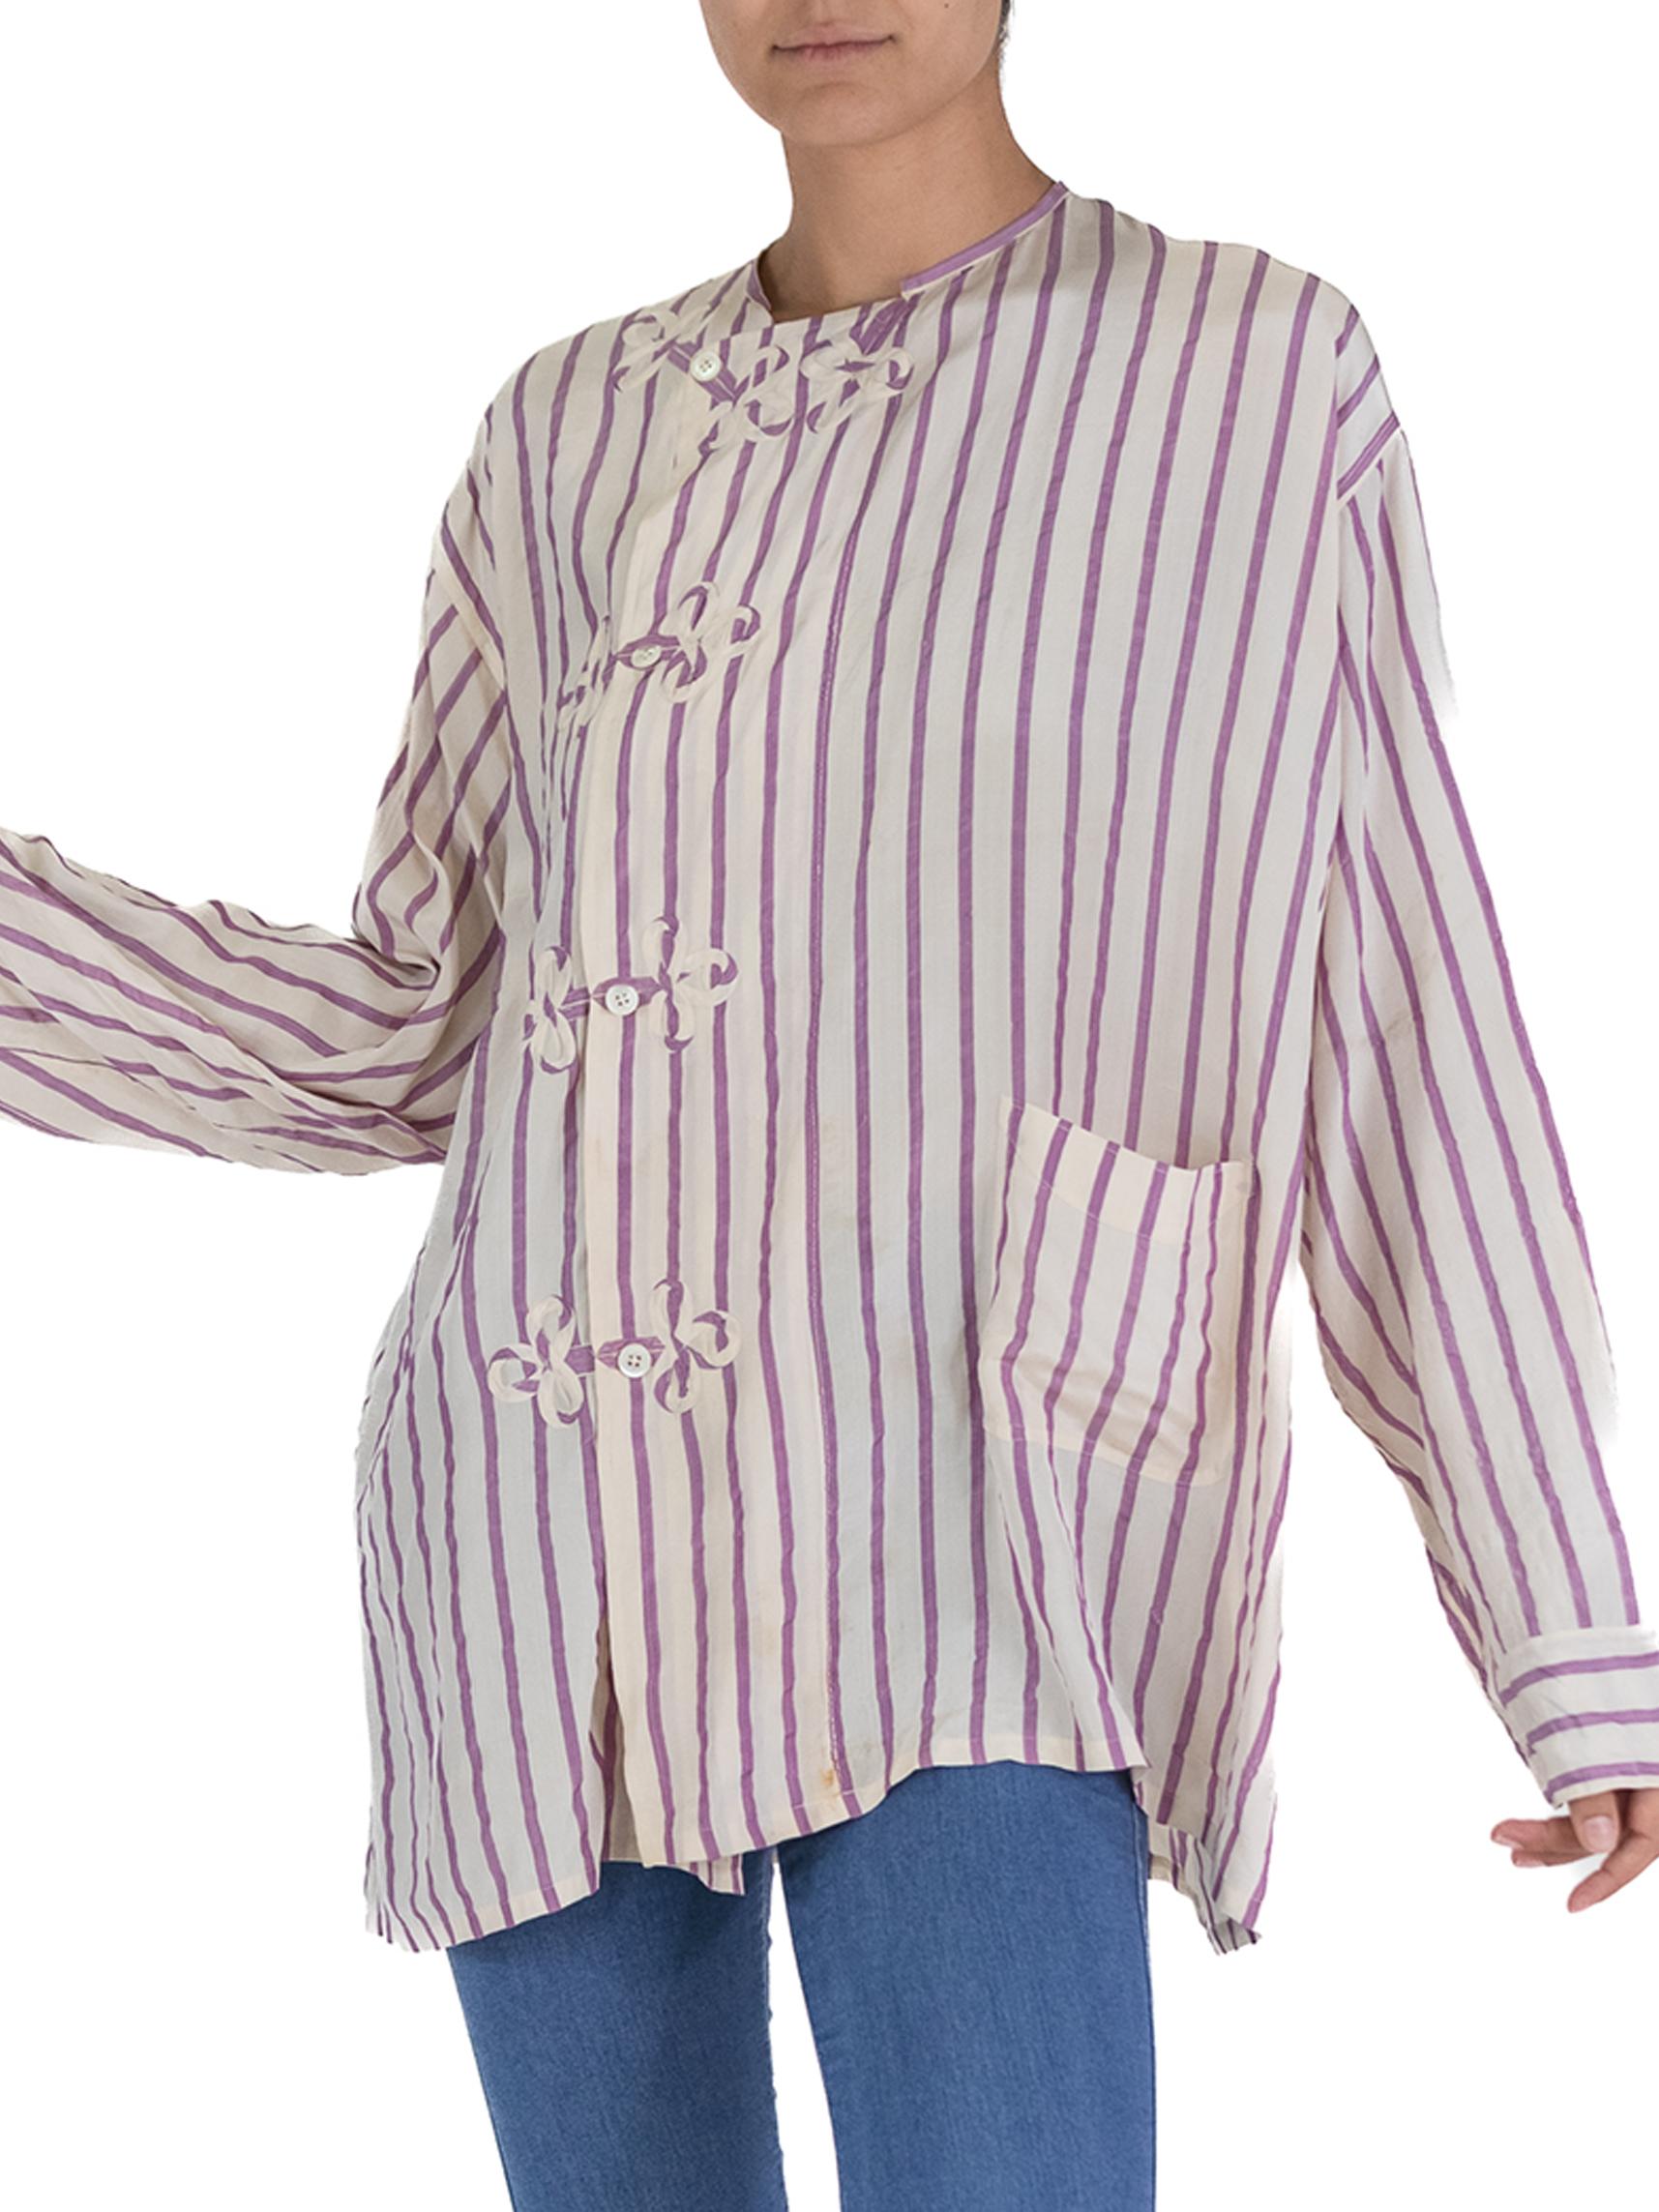 Victorian White & Lavender Silk Striped Antique Pajama Top For Sale 3